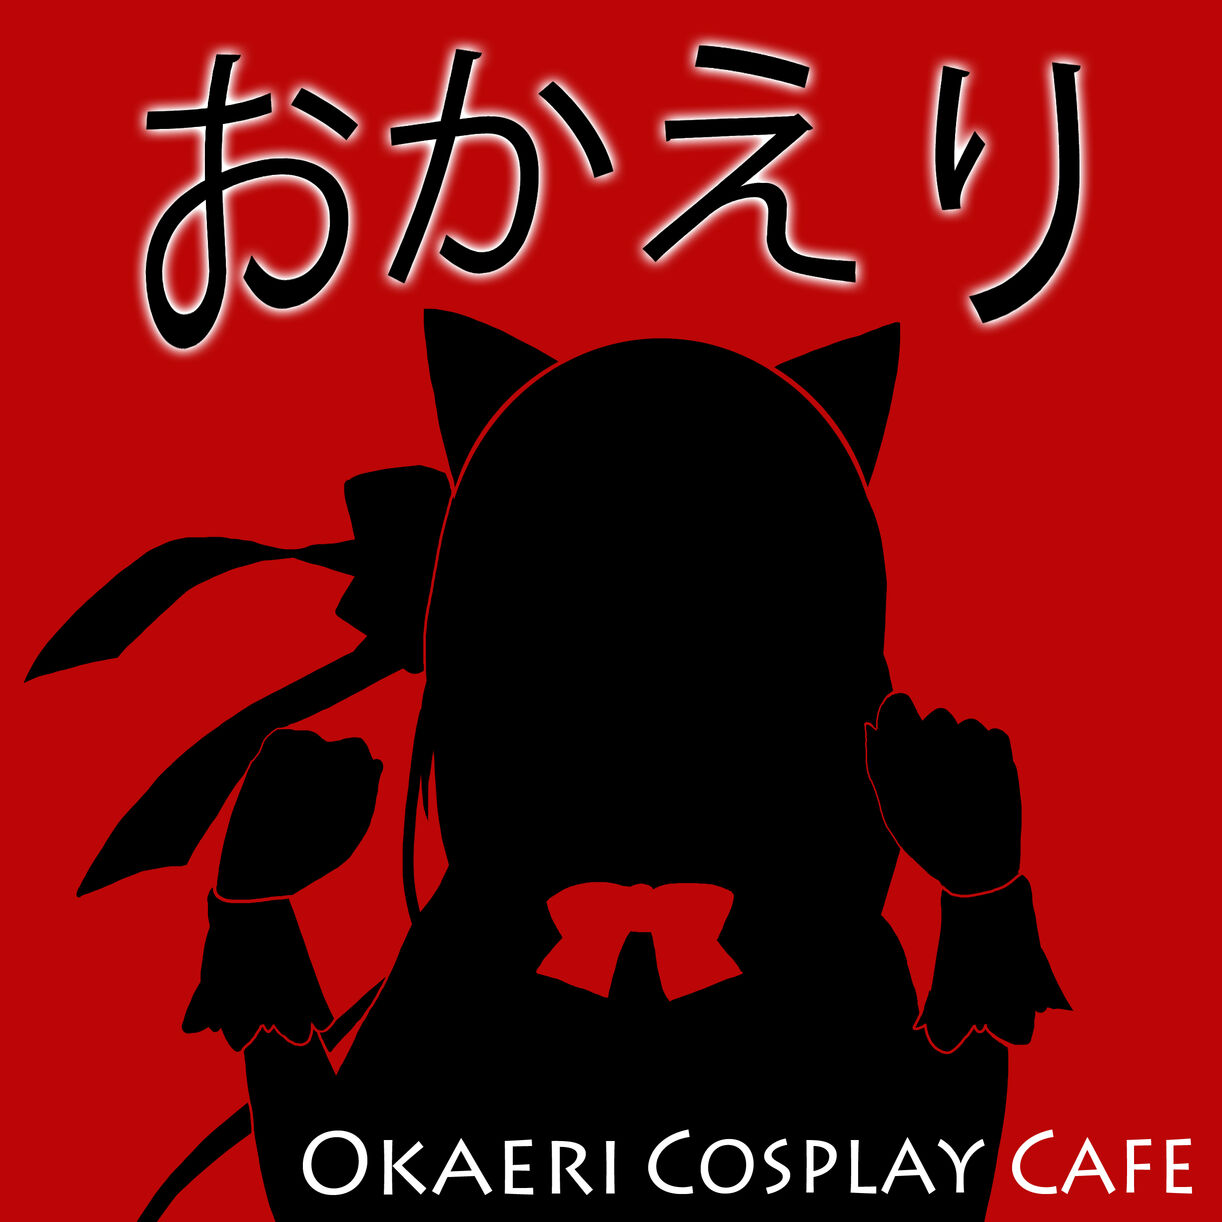 Okaeri cosplay bar